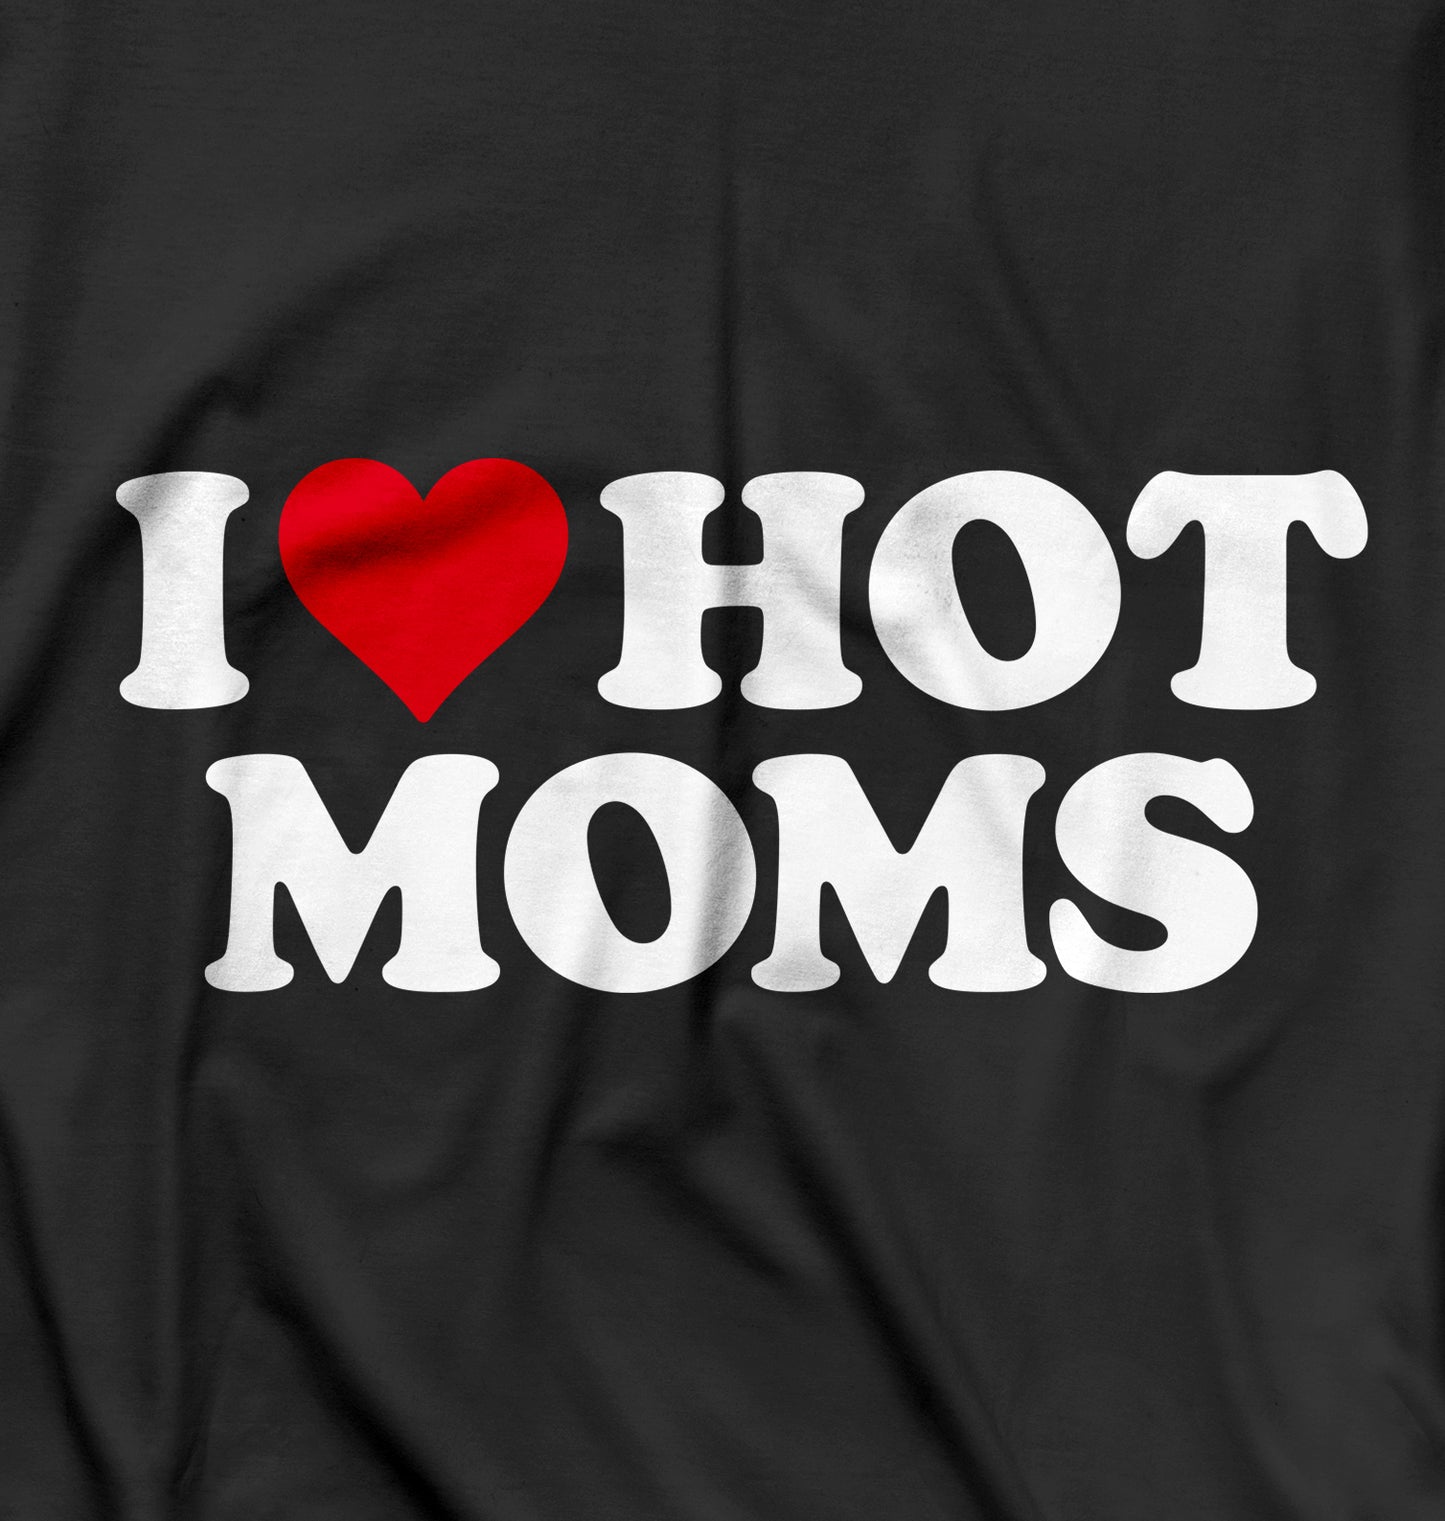 Hot Moms Hoodie